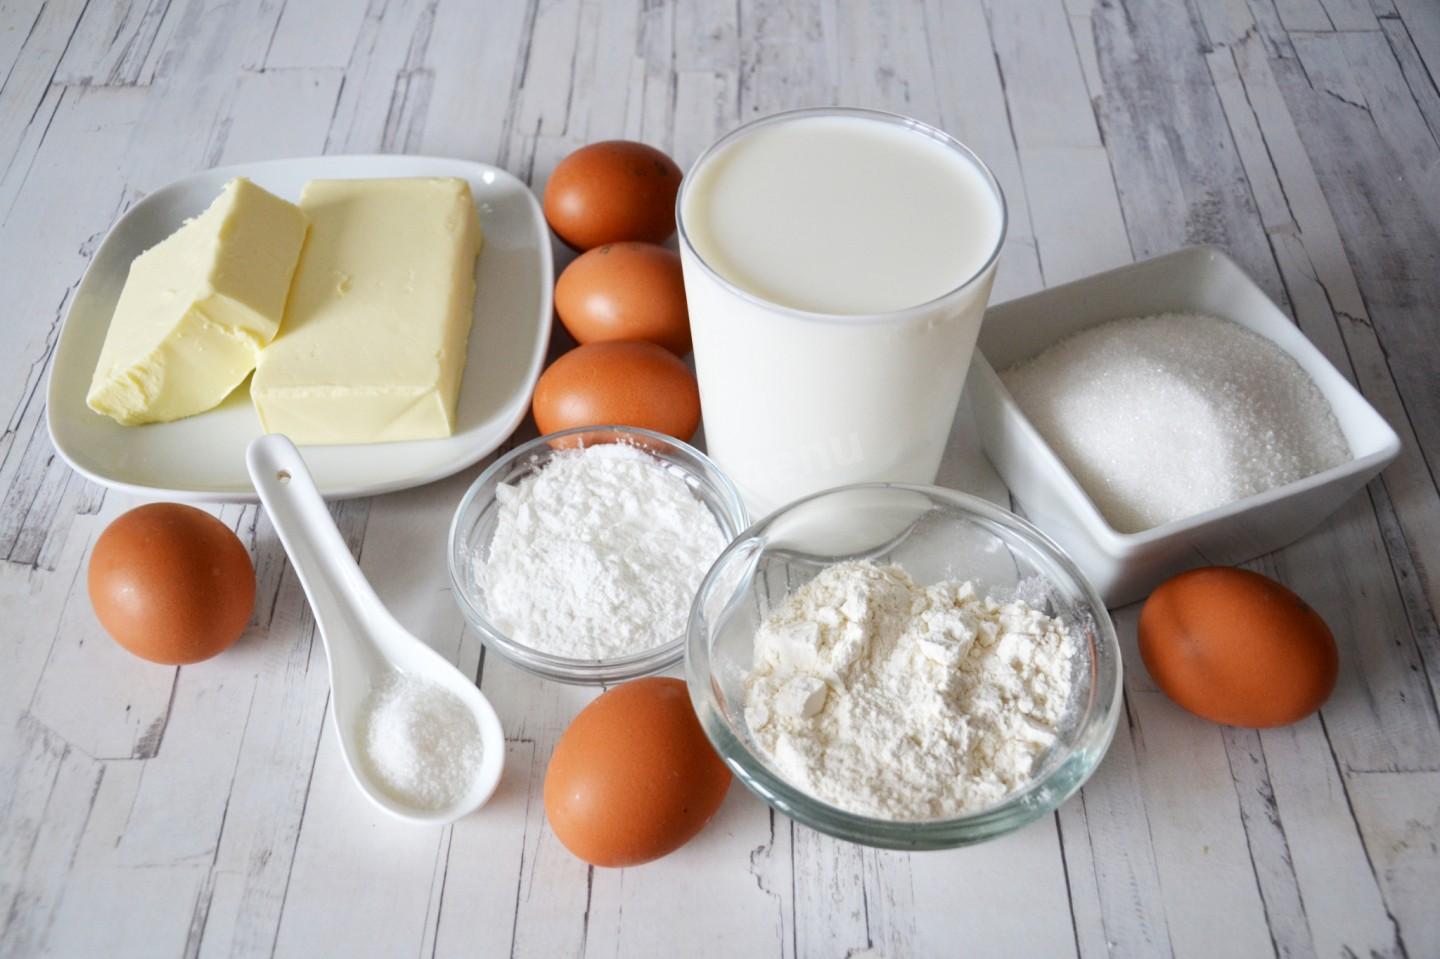 Сметана яйца мука сахар сливочное масло. Яйца молоко мука. Мука молоко яйца сахар. Мука яйца сахар. Молоко сахар мука масло.